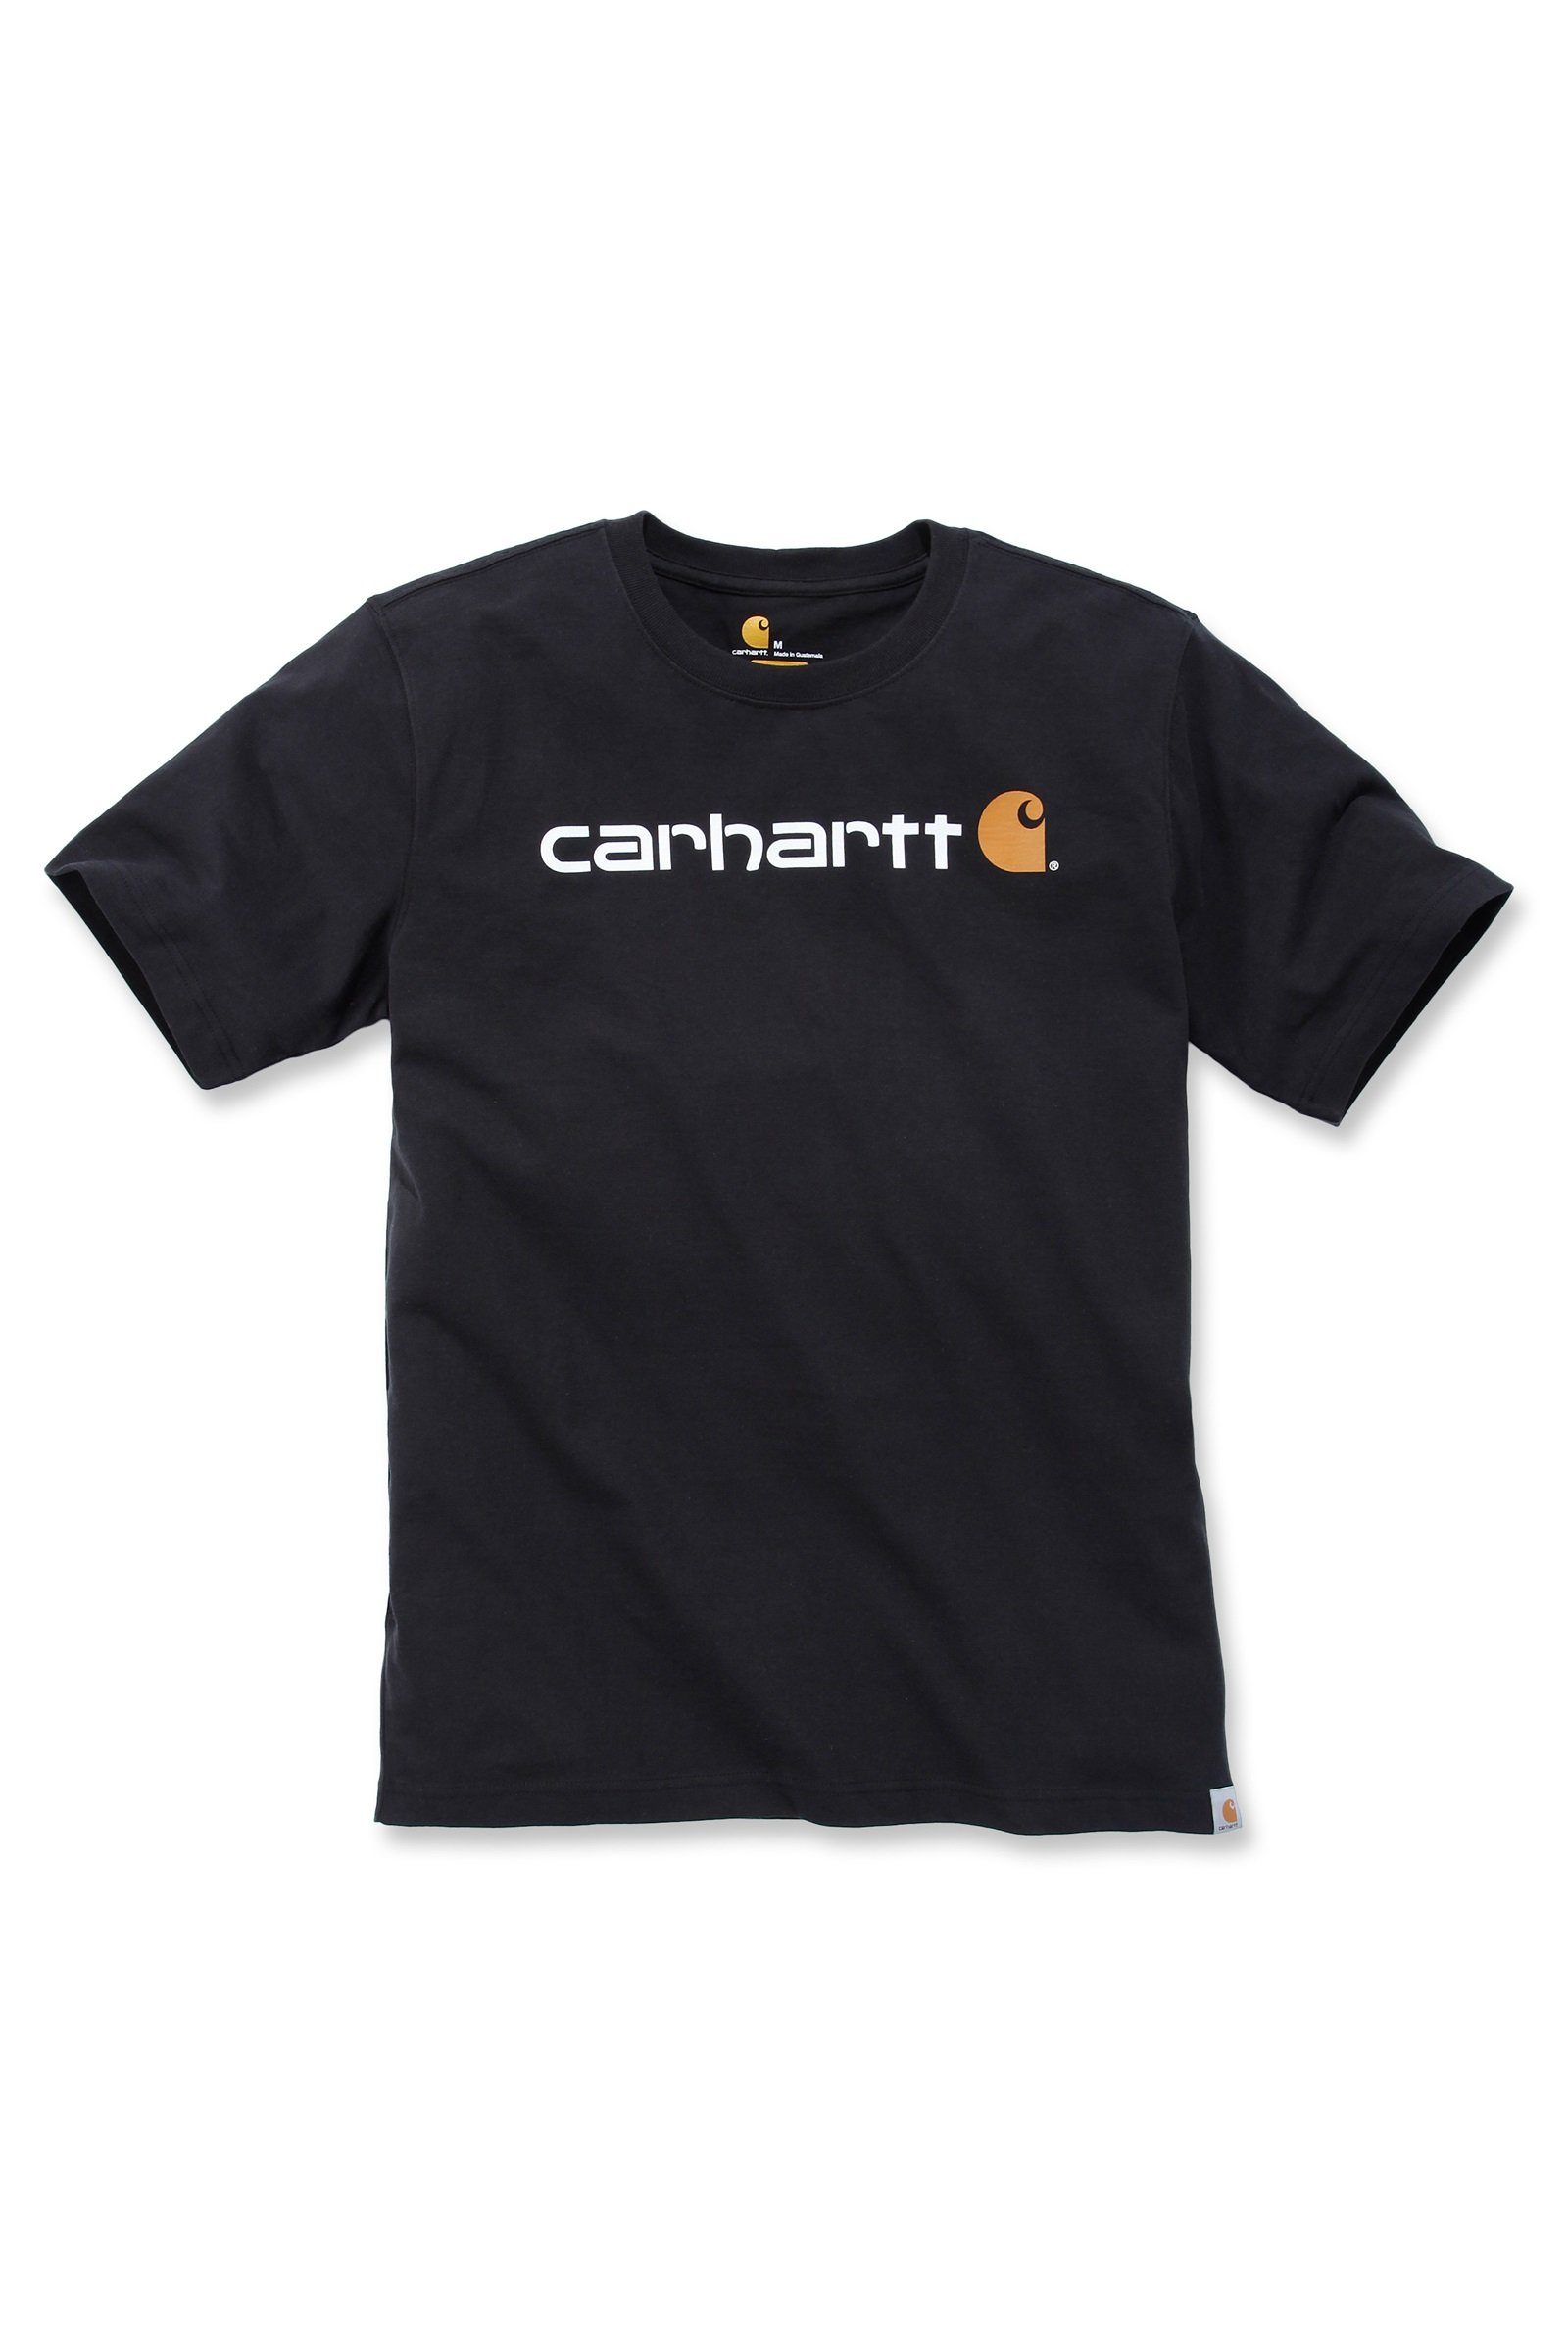 Relaxed Carhartt Logo T-Shirt Fit Adult Short-Sleeve T-Shirt Heavyweight Herren Graphic Carhartt black